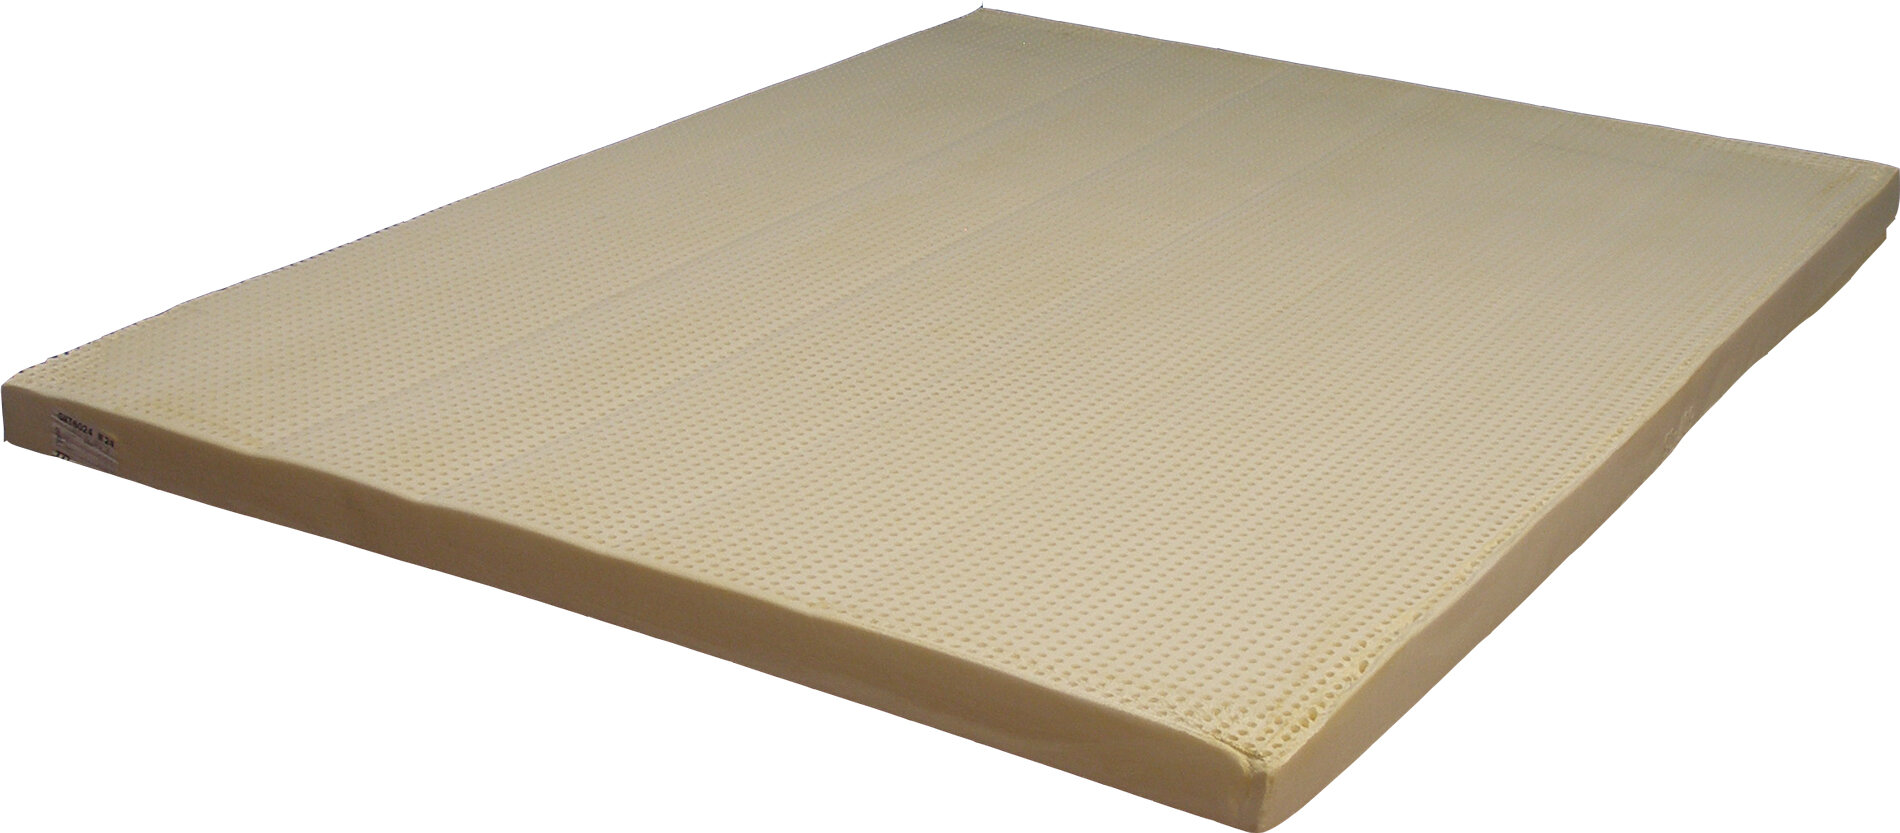 latex foam mattress sagging